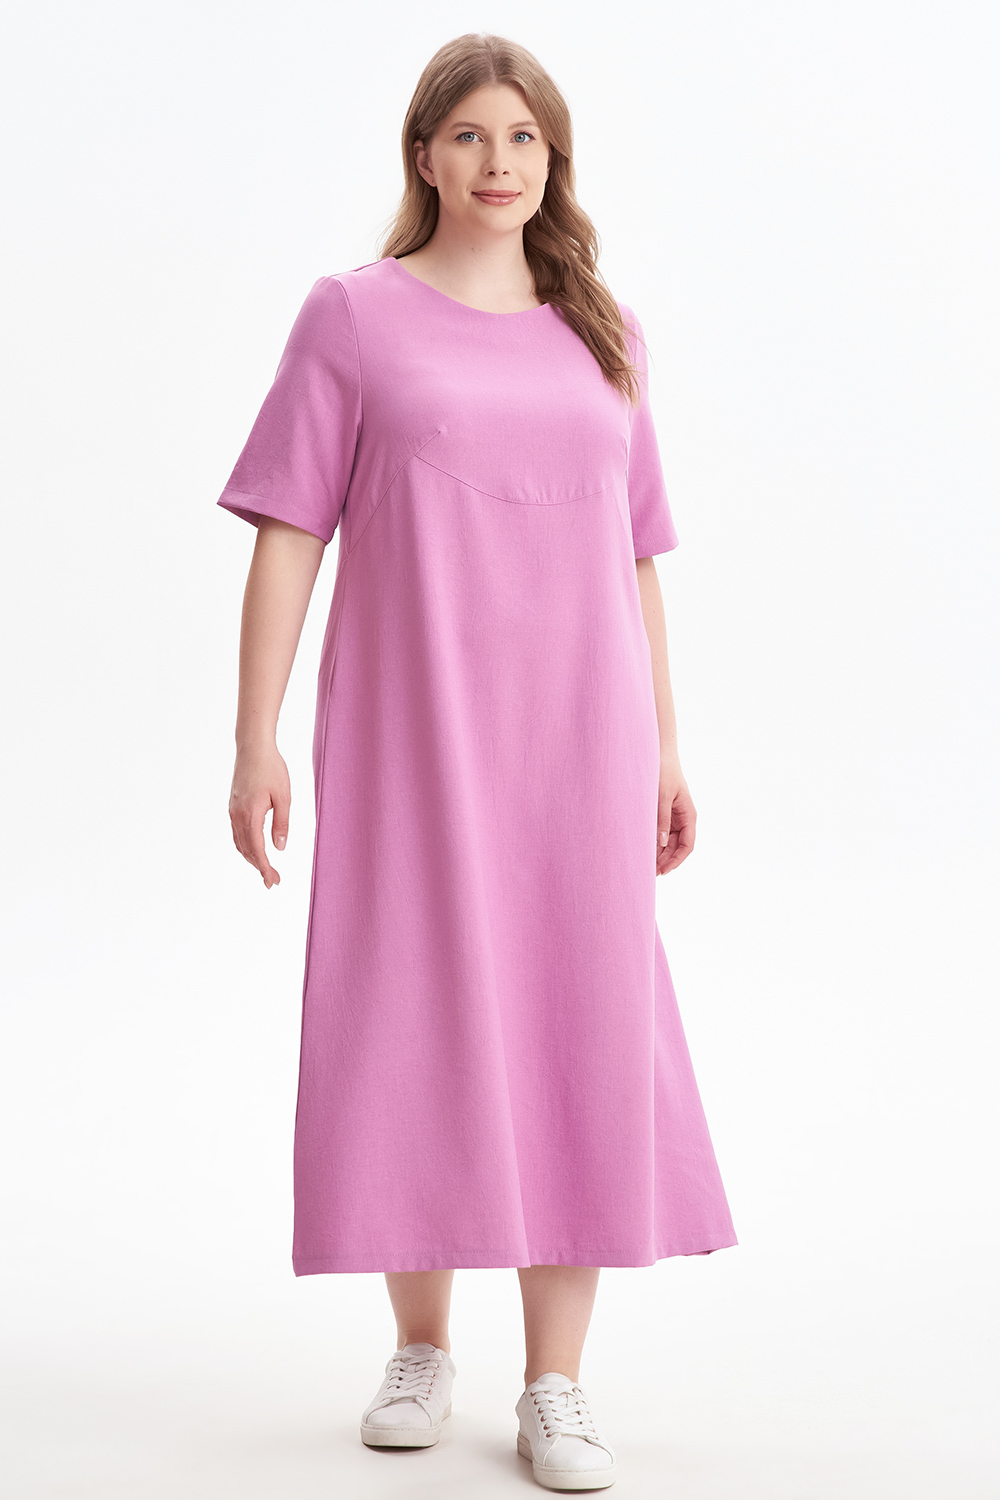 Платье женское OLSI 2305012 розовое 52 RU